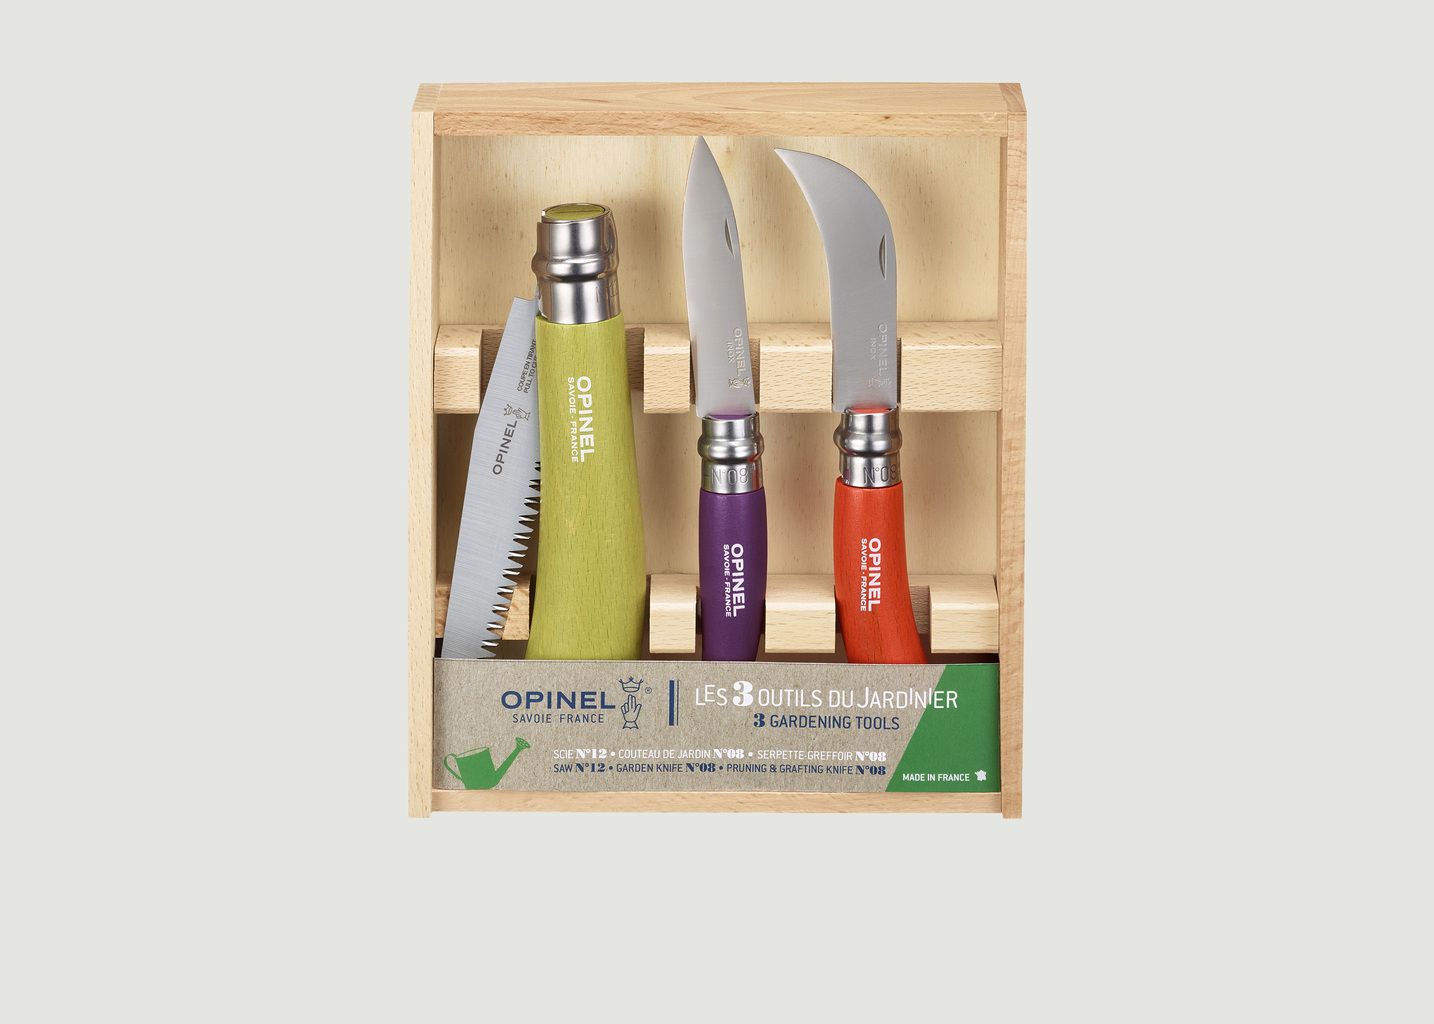 3 Tools Gardening Set - Opinel